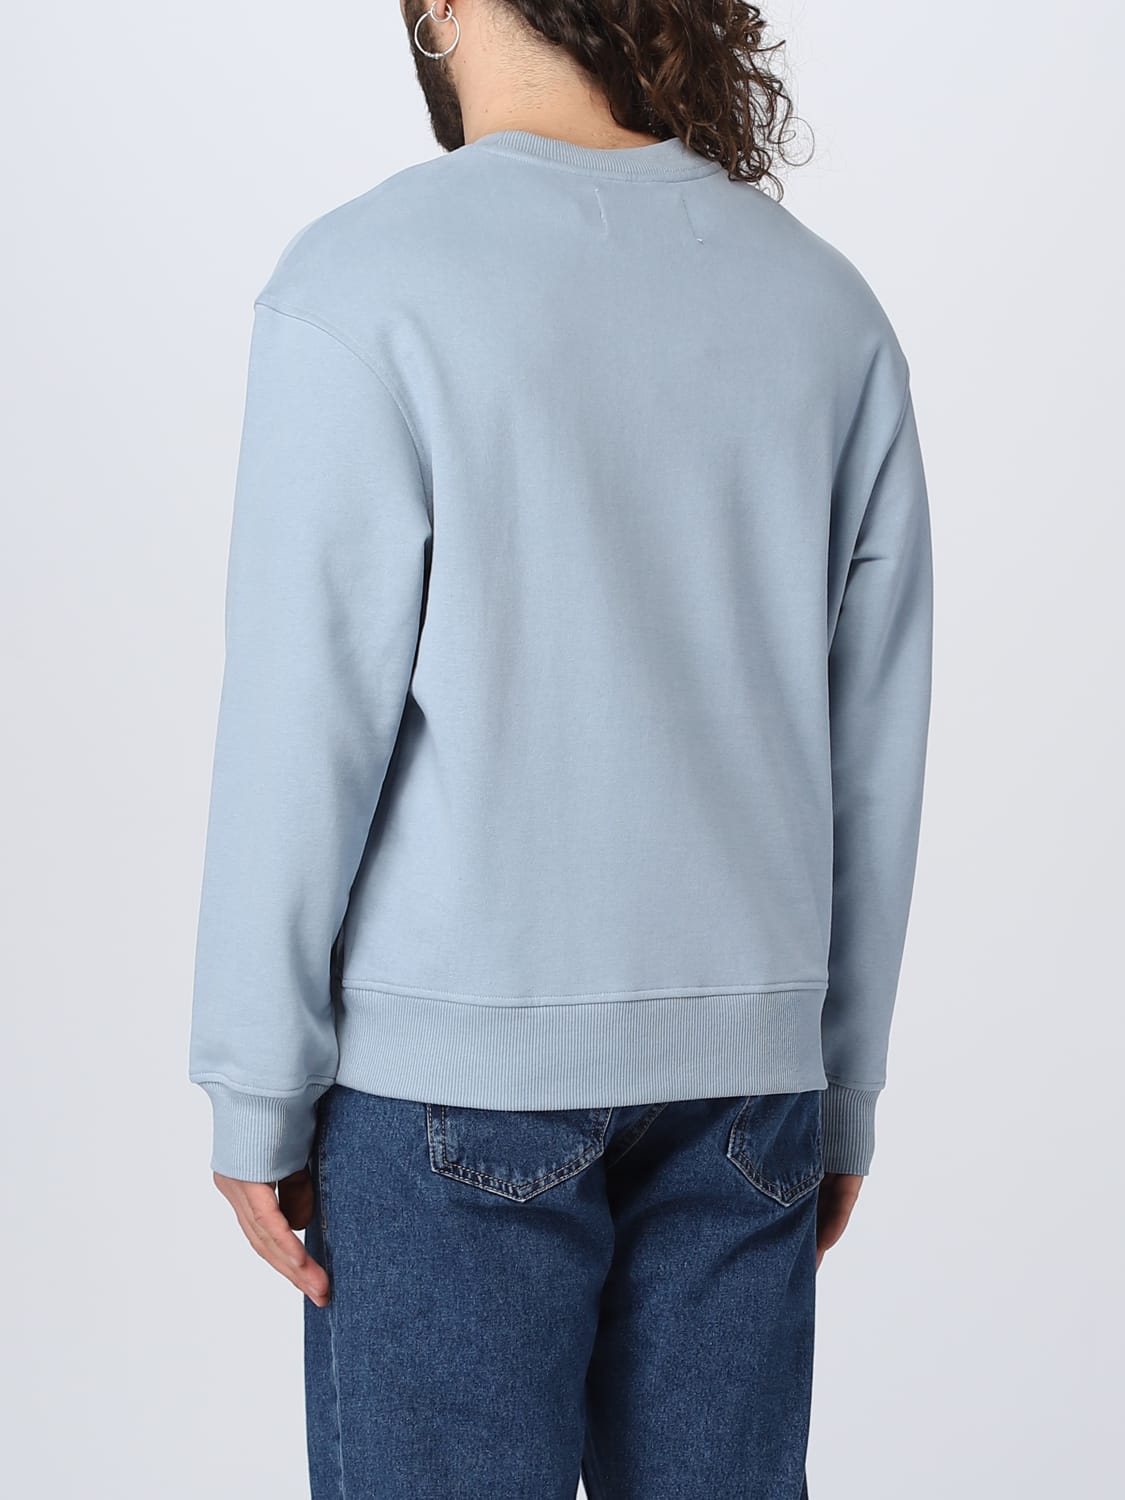 CALVIN KLEIN sweatshirt for - Gnawed Blue Calvin Klein Jeans sweatshirt J30J322625 online at GIGLIO.COM